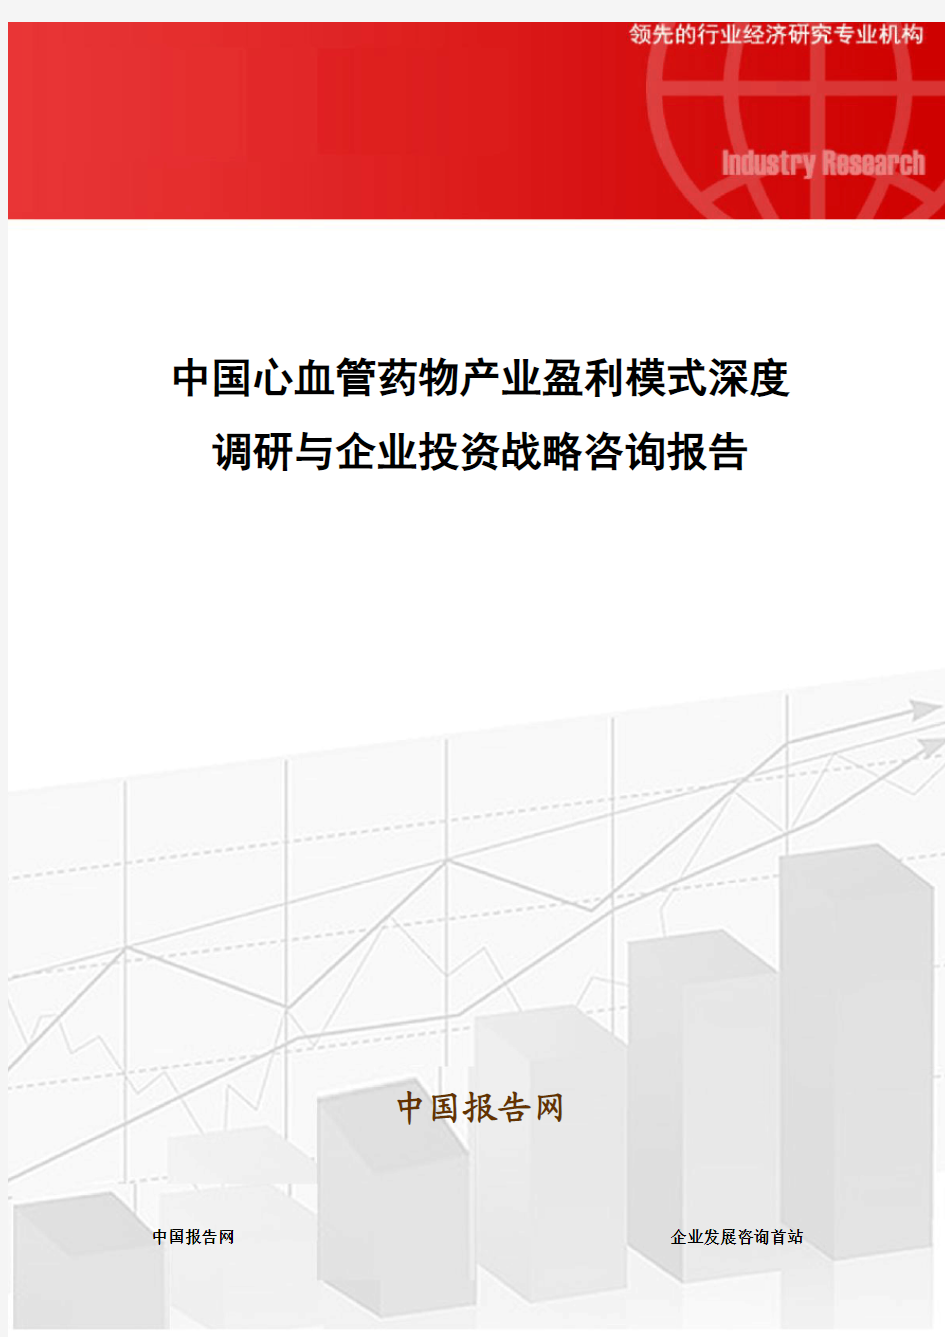 中国心血管药物产业盈利模式深度调研与企业投资战略咨询报告